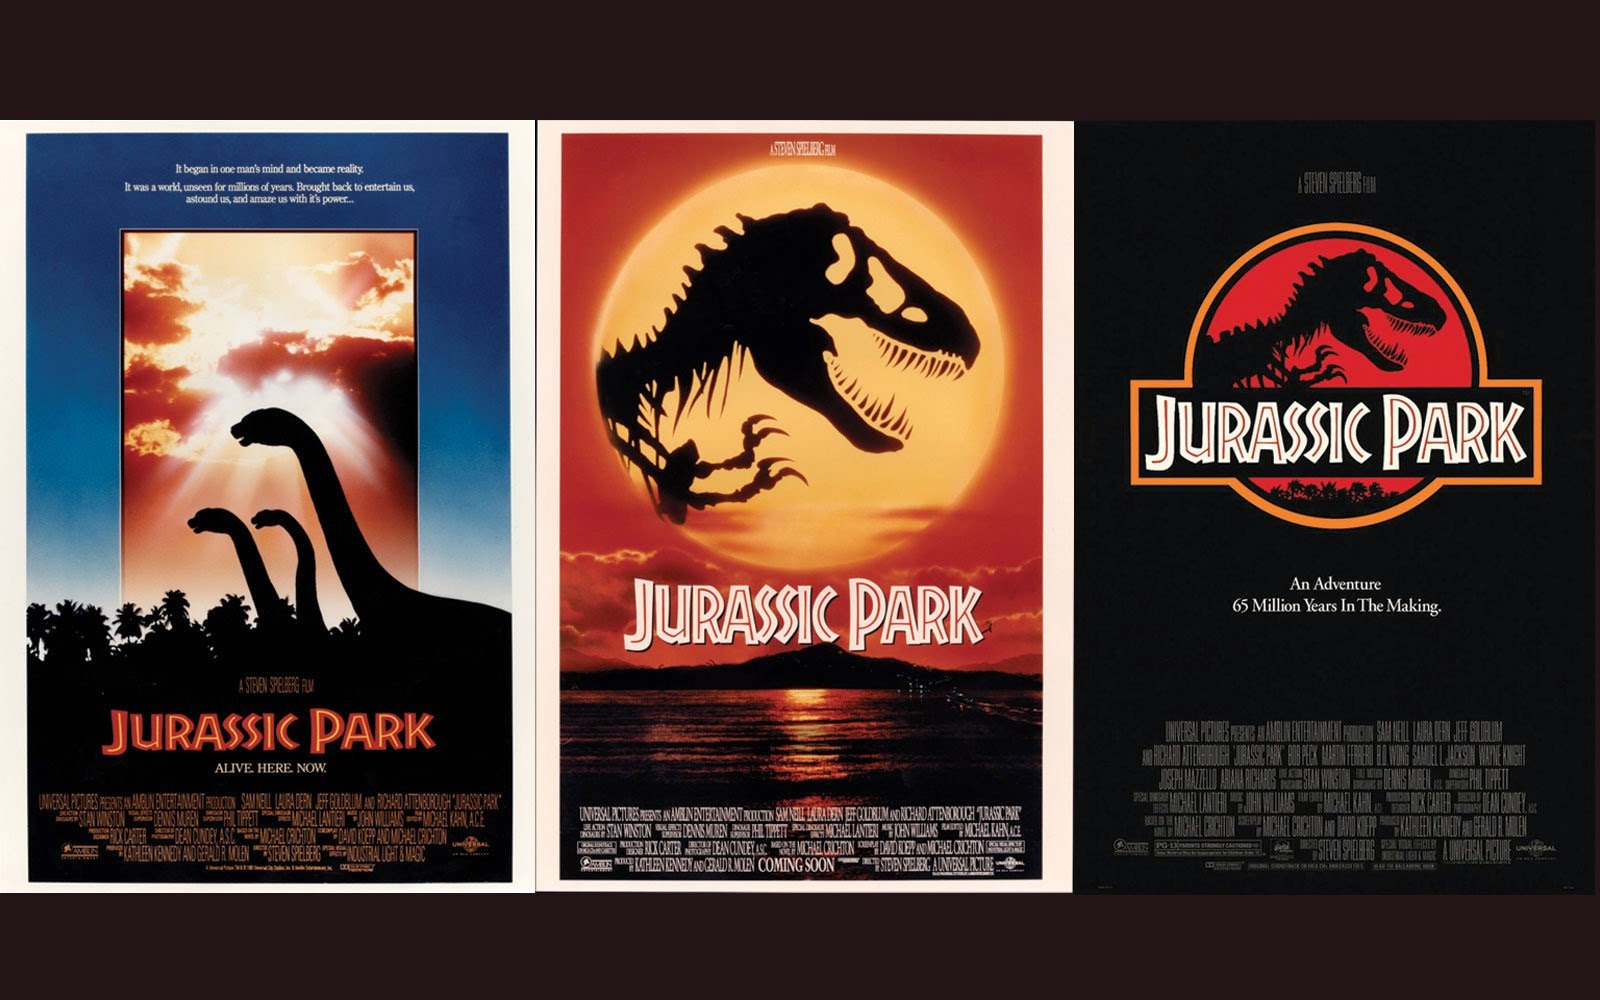 [Télécharger] Jurassic Park Affiche Hd  Affiche Webs intérieur Jurassic Park Affiche